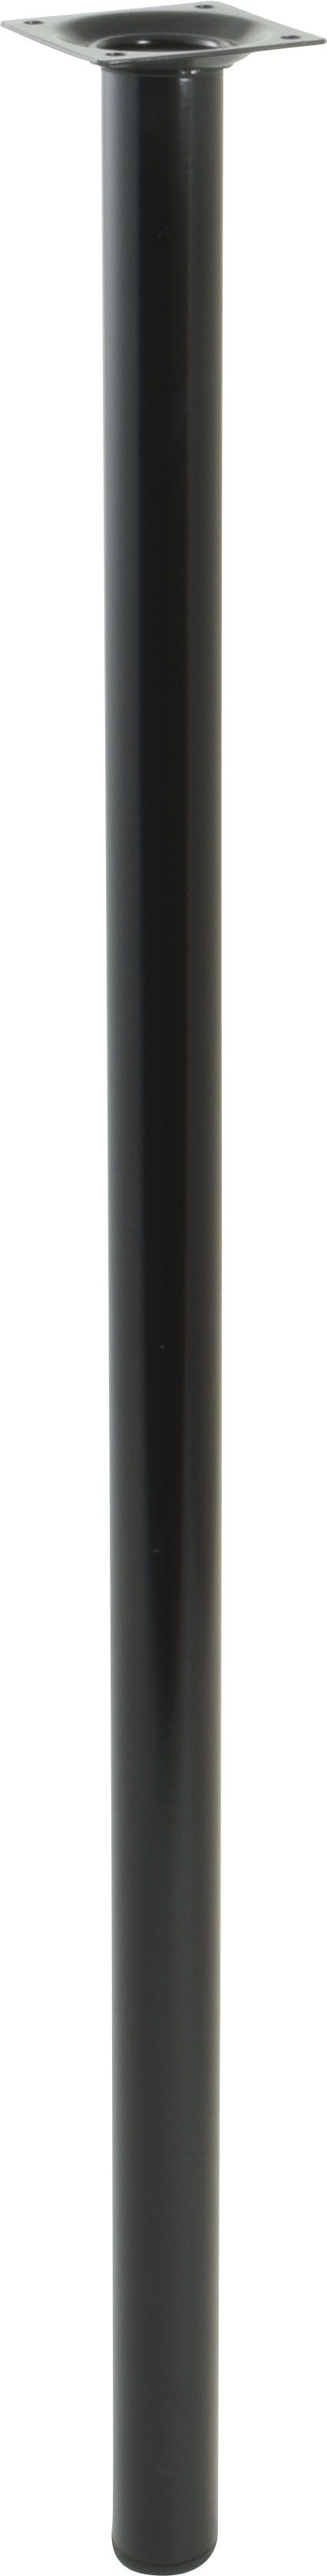 Pied cylindrique métal noir H.700 Ø30 mm - EVOLUDIS